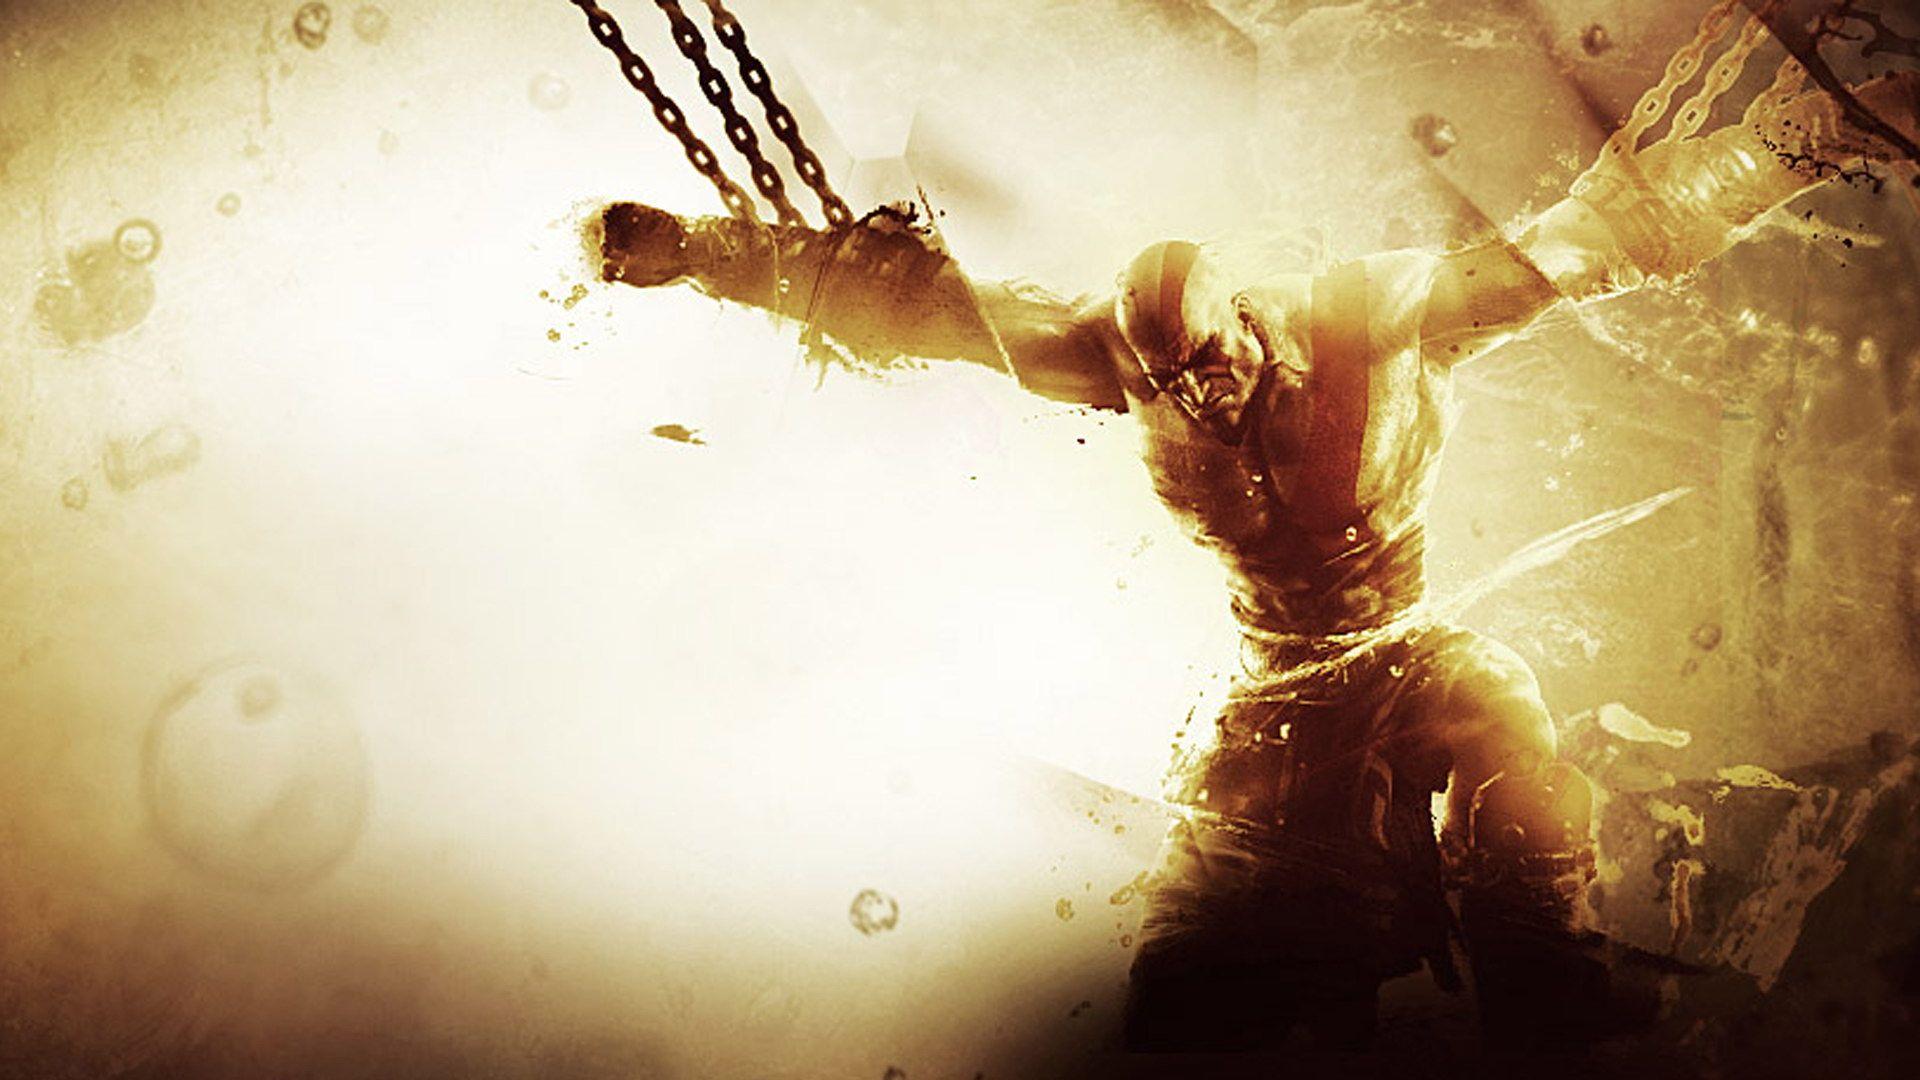 God of war ascension PS3 wallpaper 1080p